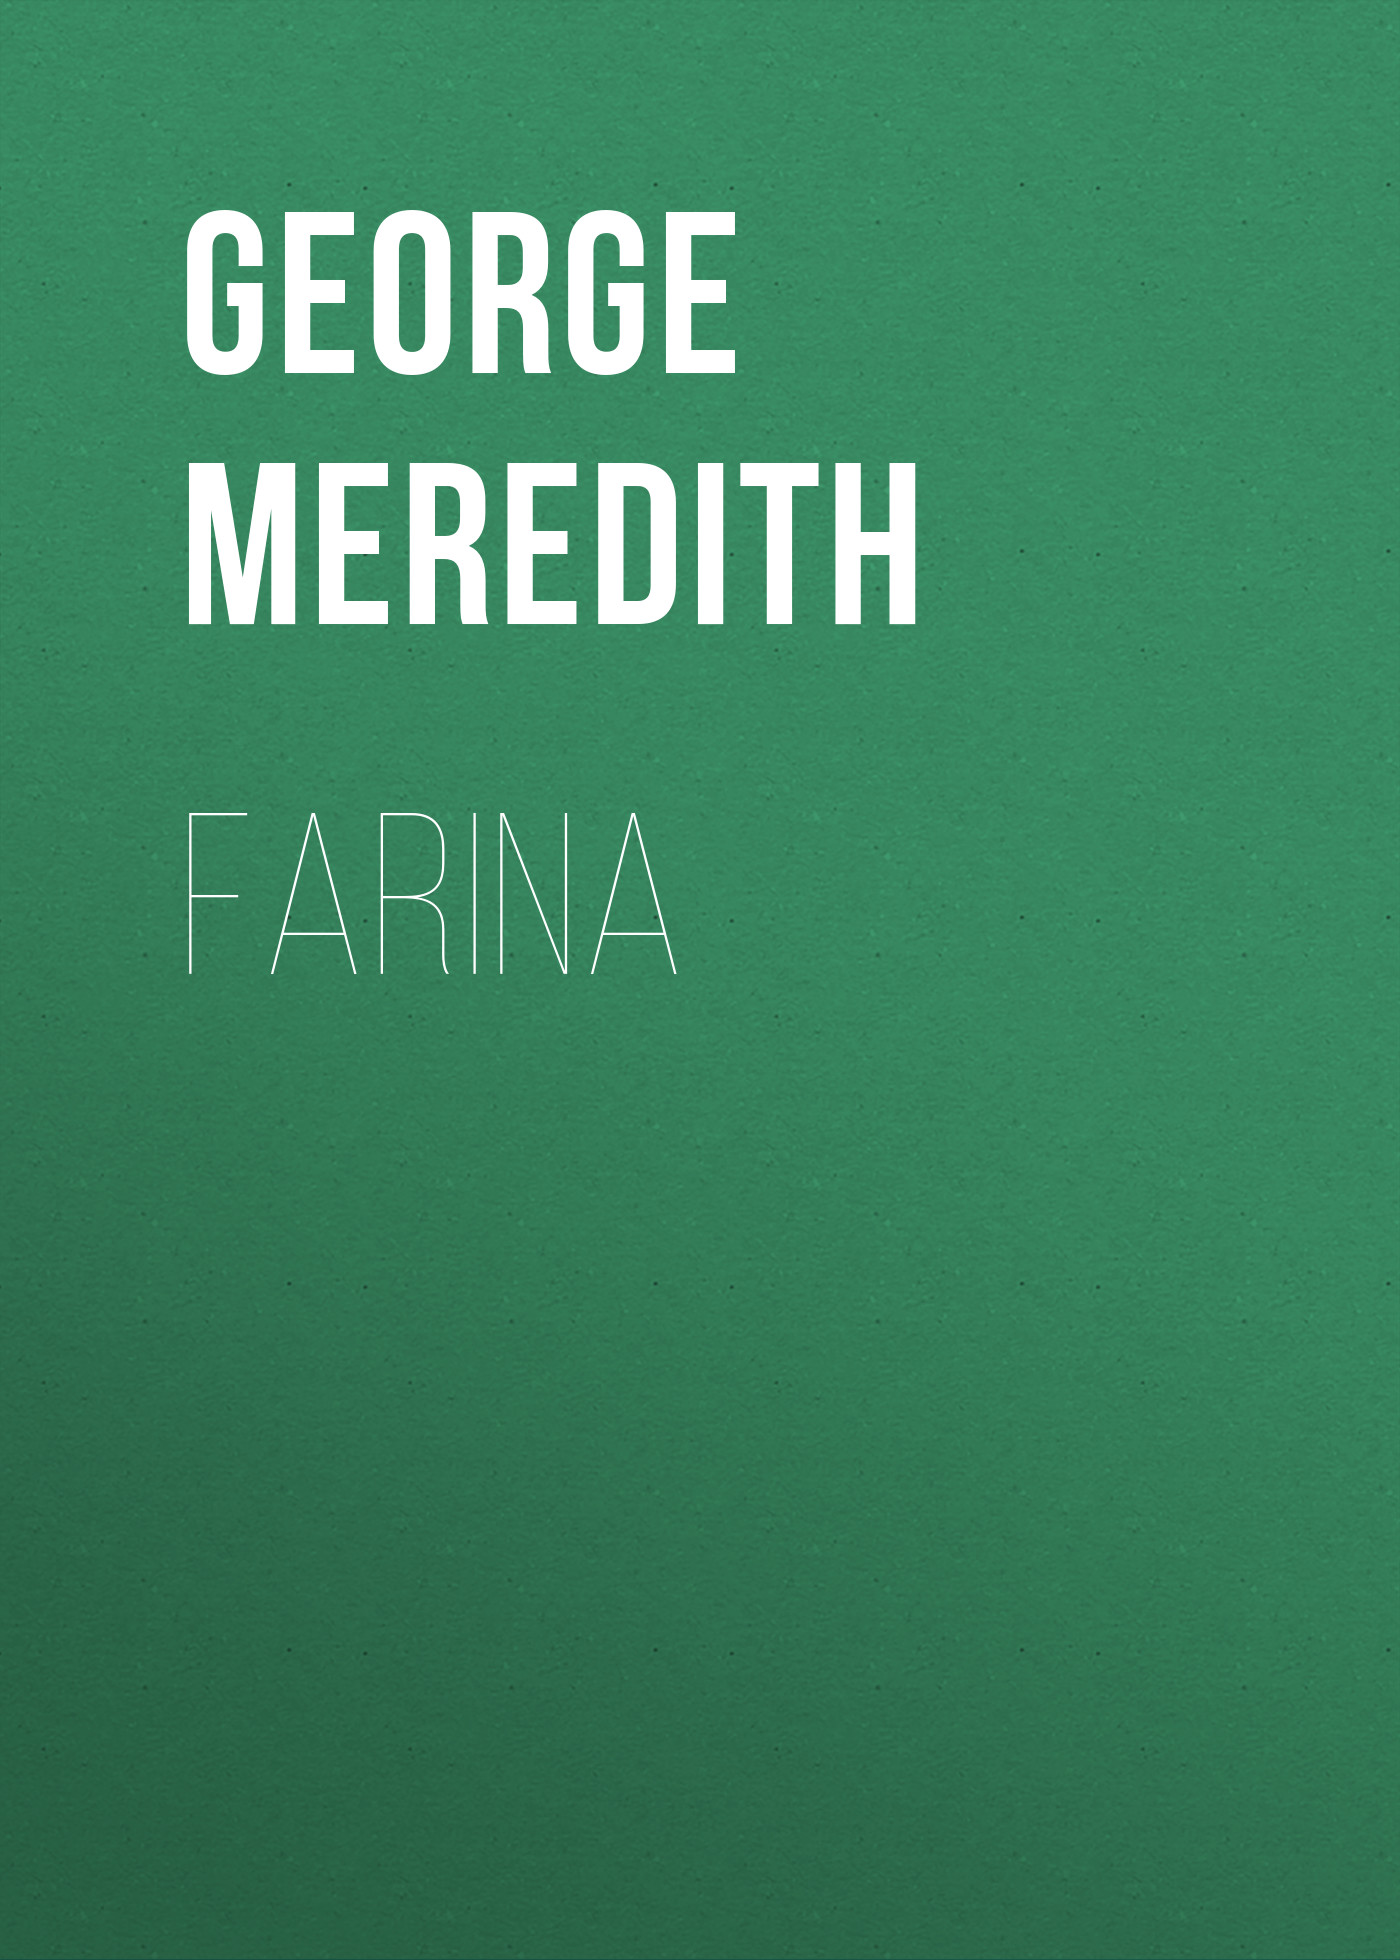 Книга Farina из серии , созданная George Meredith, может относится к жанру Зарубежная классика, Литература 19 века, Зарубежная старинная литература. Стоимость электронной книги Farina с идентификатором 36095837 составляет 0 руб.